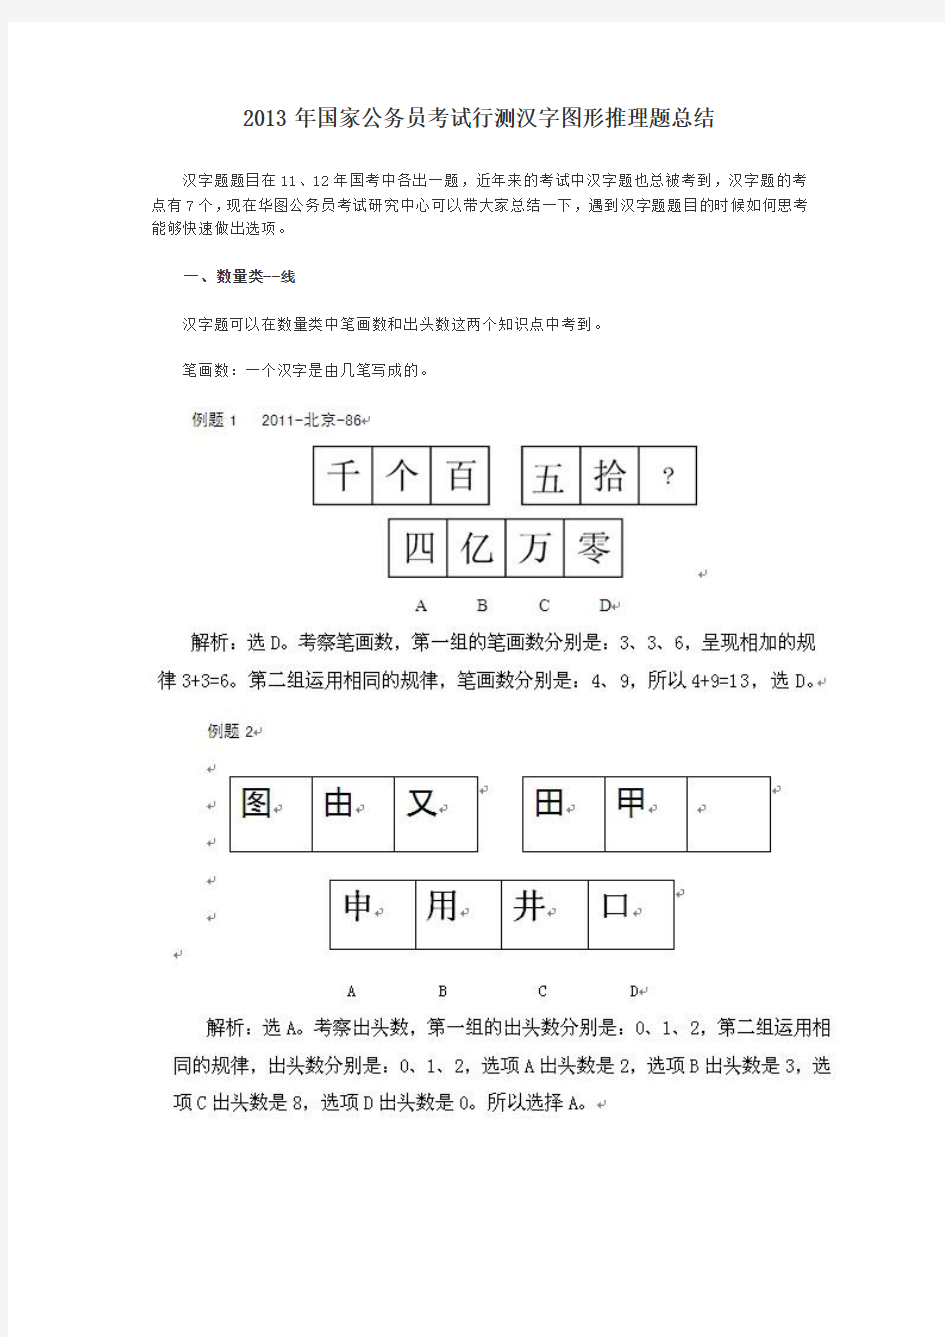 2013年国家公务员考试行测汉字图形推理题总结